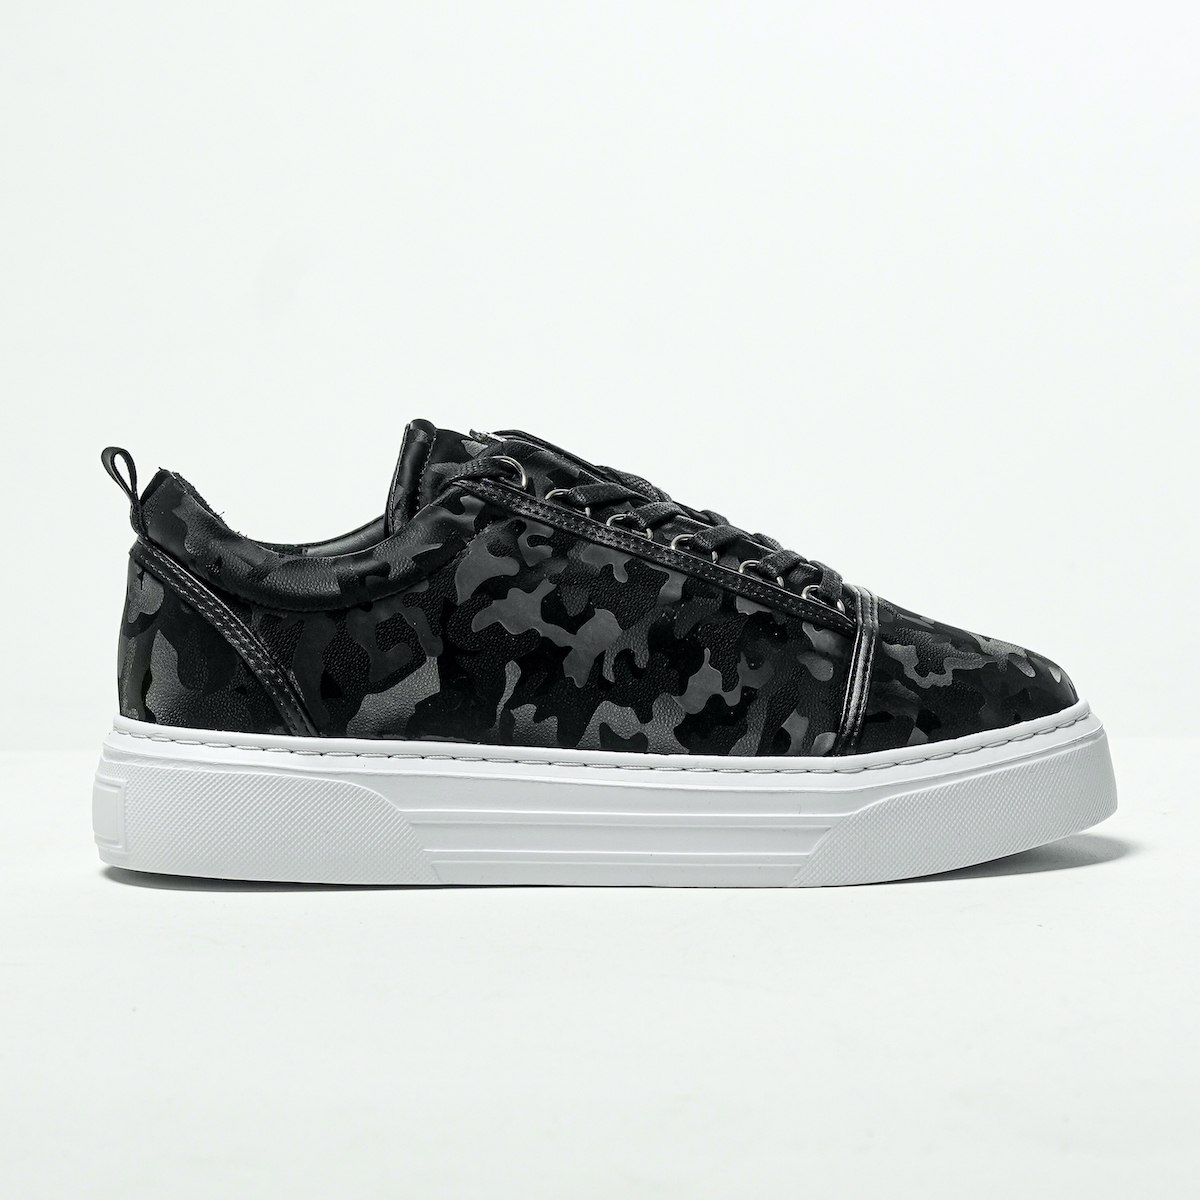 Herren Low Top Sneakers Schuhe mit Krone in camouflage schwarz - 1